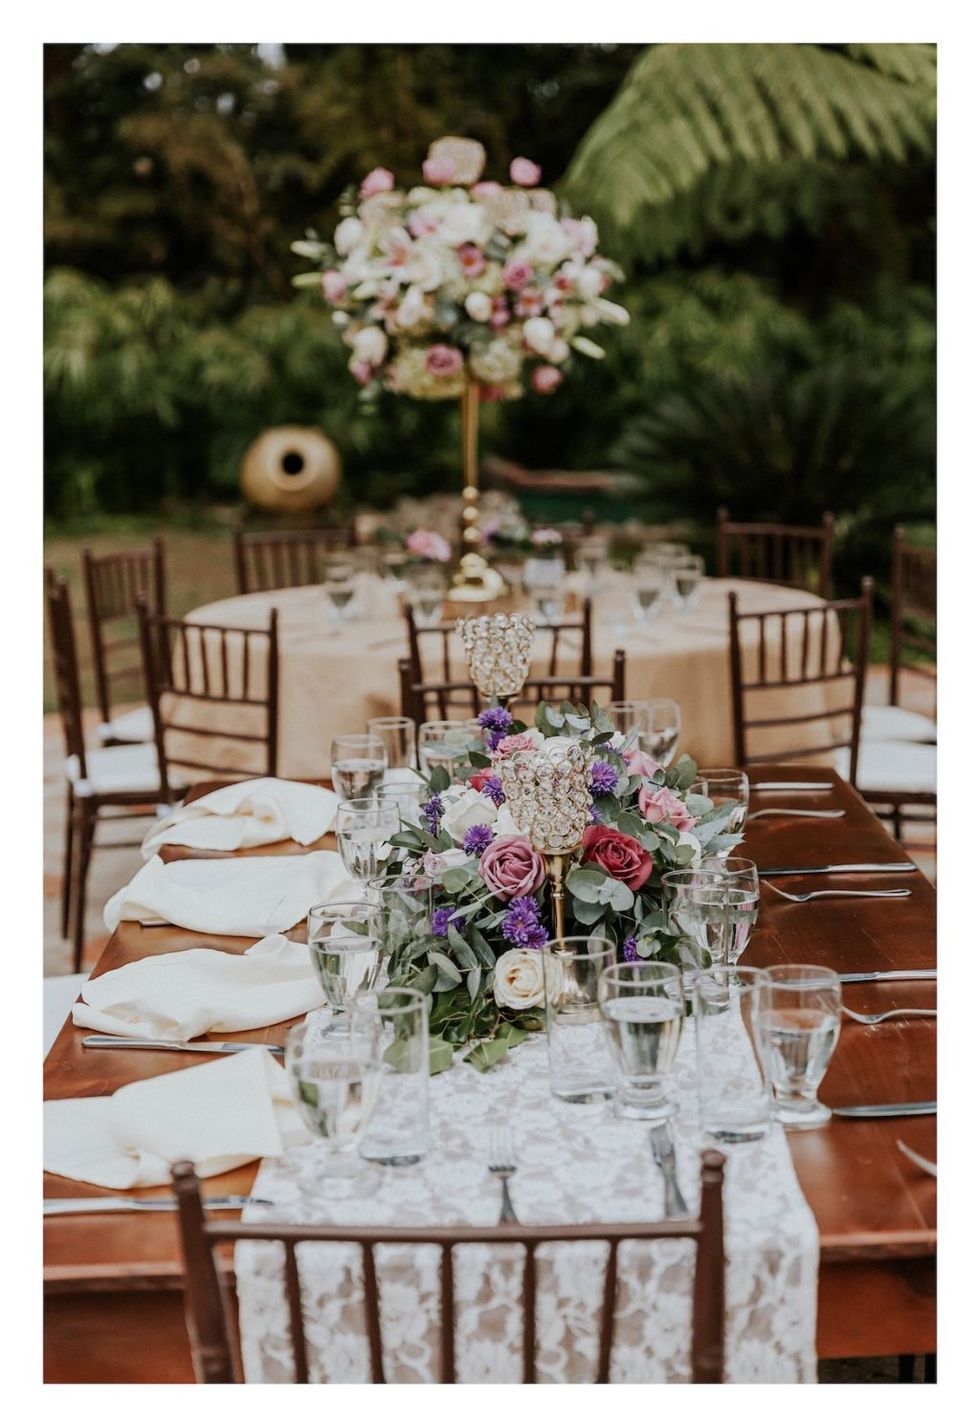 Tablecloth, Petal, Flower, Table, Furniture, Bouquet, Pink, Linens, Centrepiece, Cut flowers, 